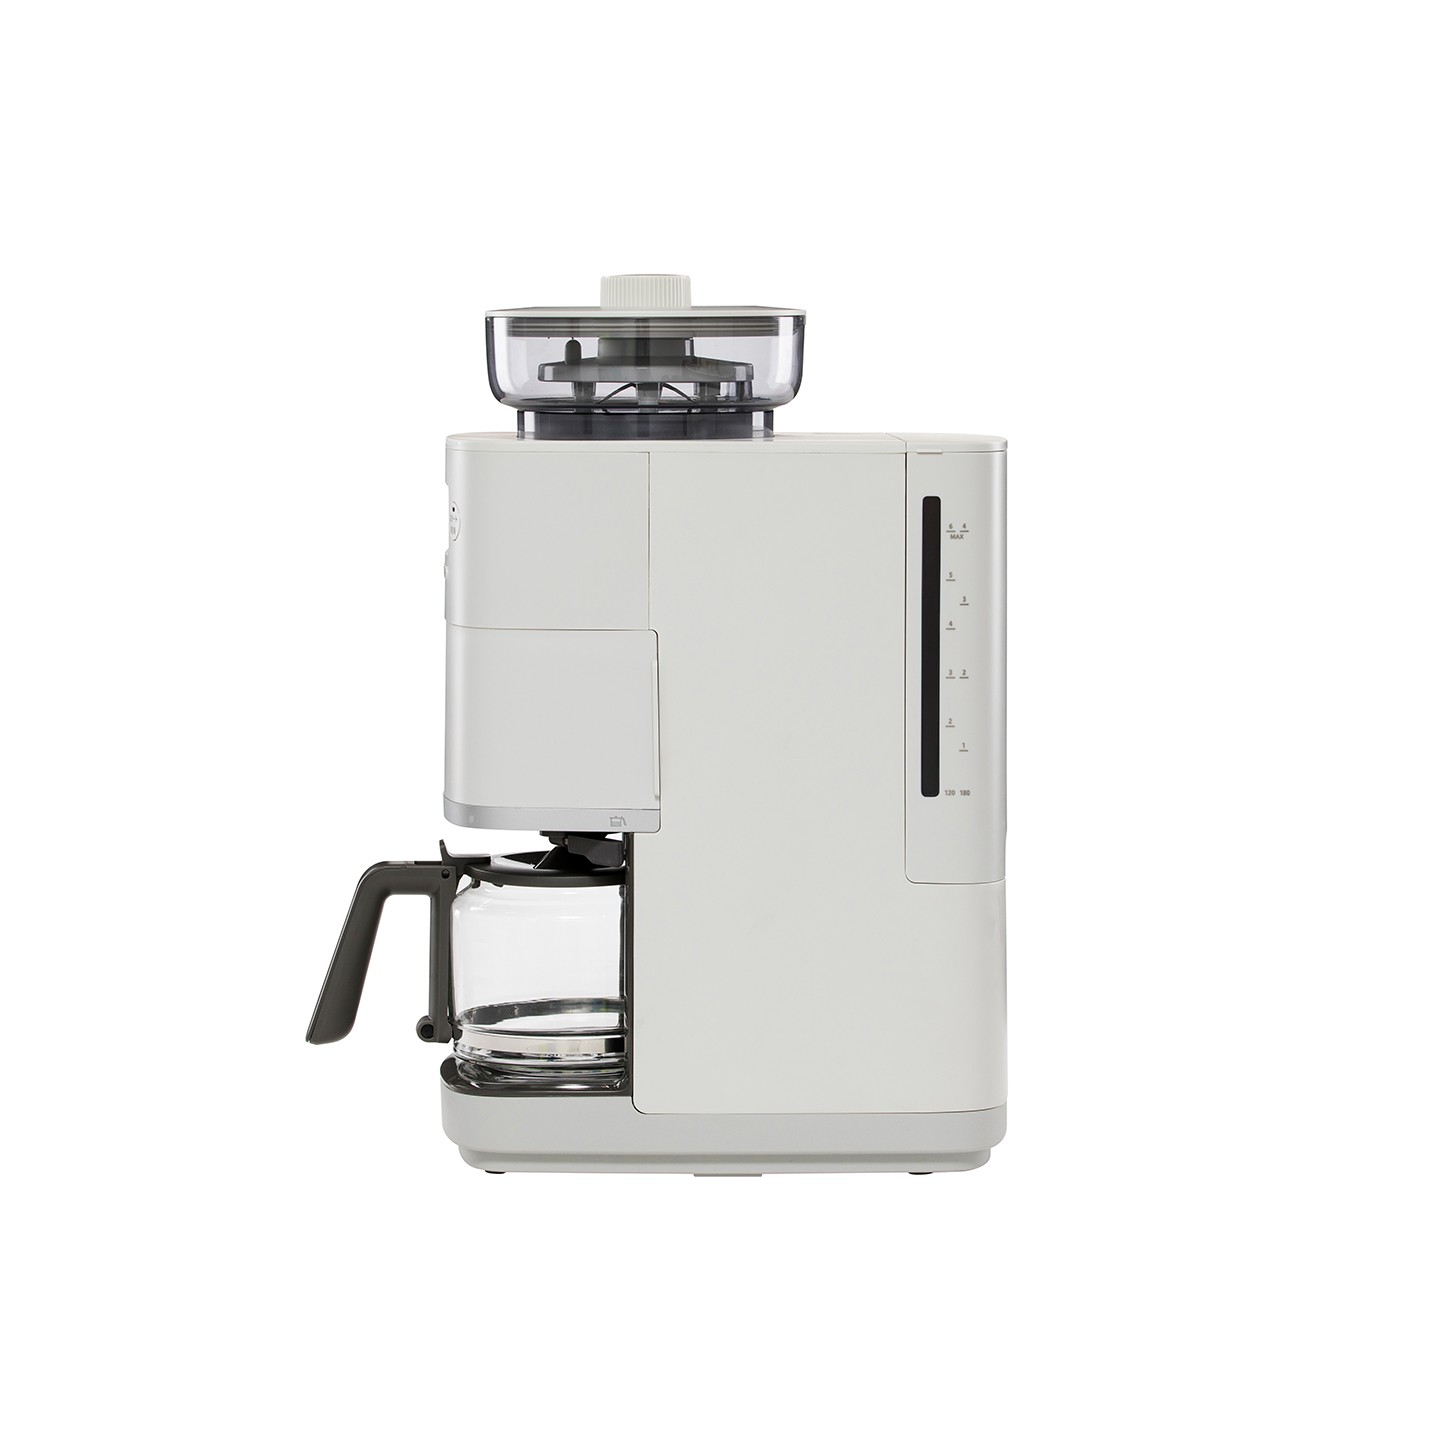 新品上市】SC-C2510 全自動石臼式研磨咖啡機淺灰色送專用濾網| 廚房 